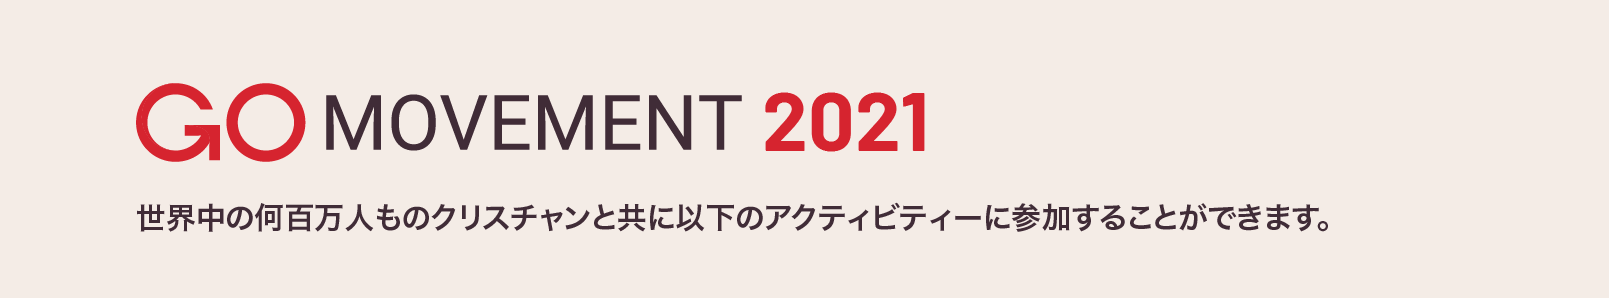 Go-Movement-2021